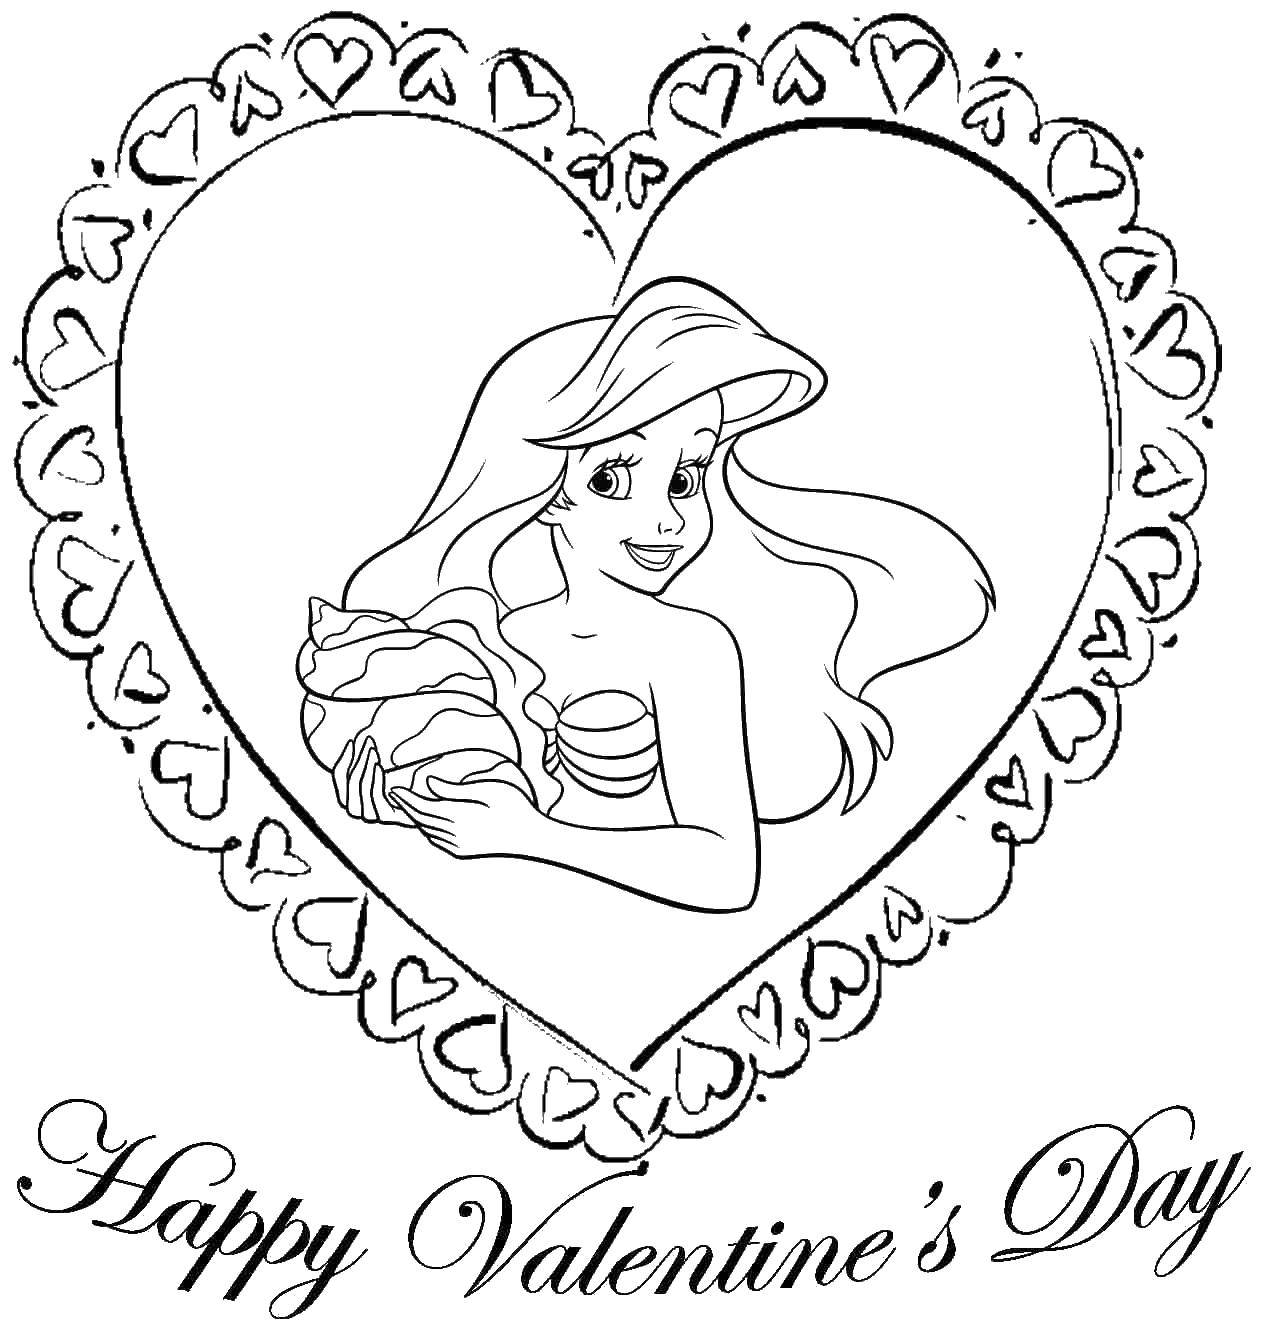 Coloring Счастливого дня влюблённых. Category День святого валентина. Tags:  День Святого Валентина, любовь, сердце.